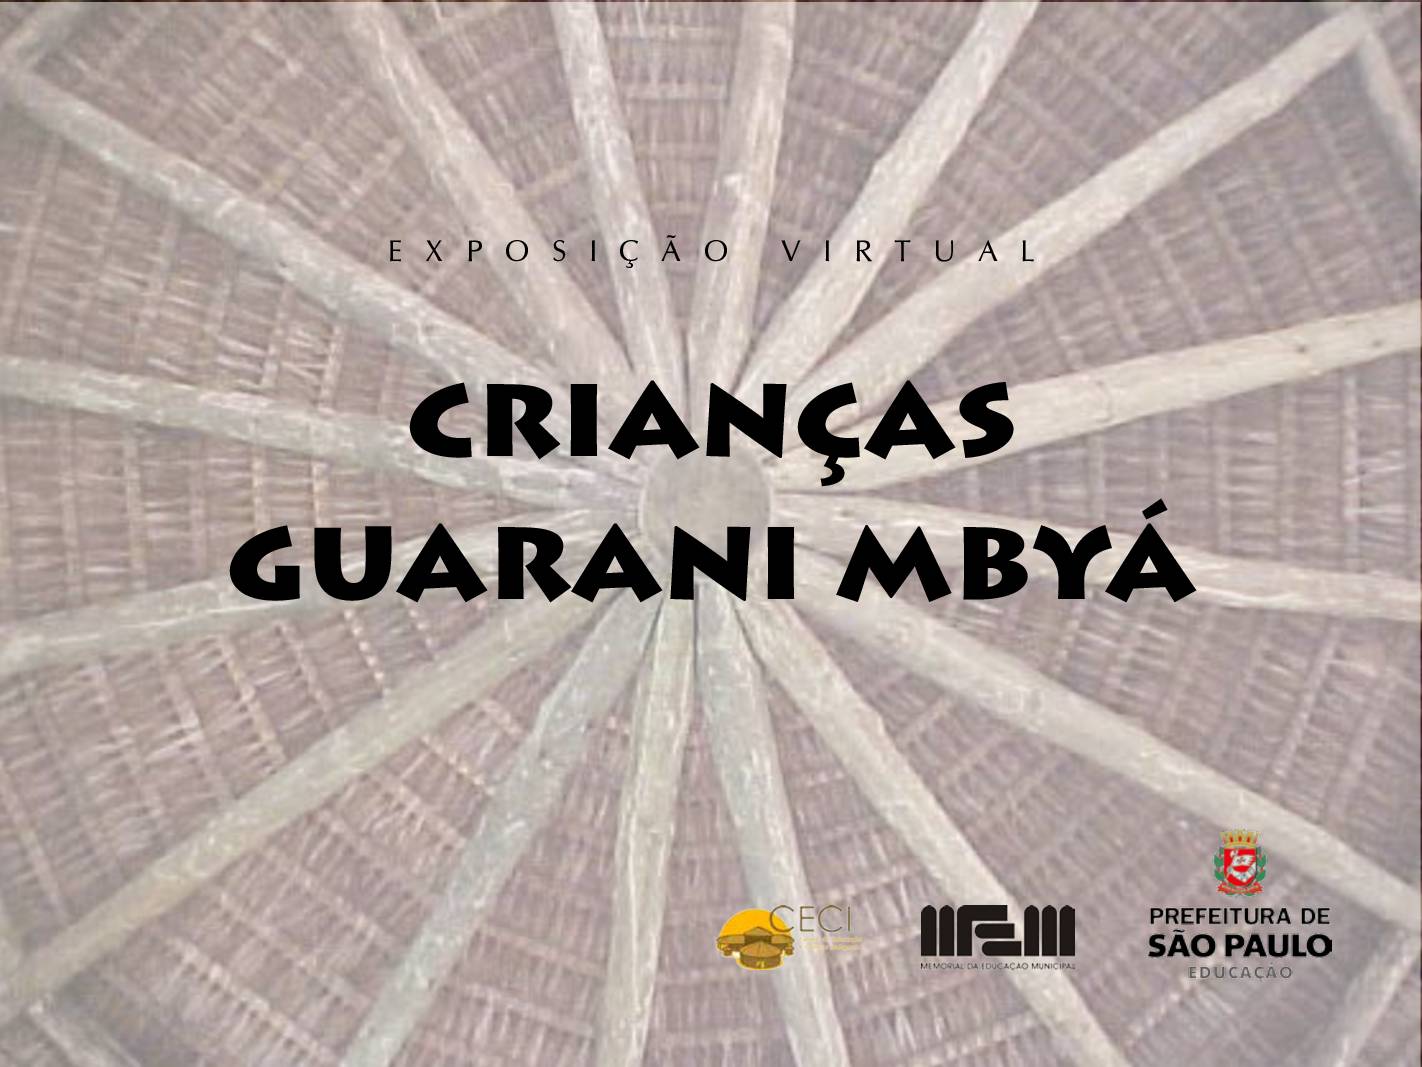 Exposição virtual realizada pelo Memorial da Educação Municipal - MEM com a temática Crianças Guarani Mbyá. A mostra é composta por 85 imagens pertencentes ao acervo do Memorial, captadas no período de 2004 a 2017 nos CEIIs/CECIs Jaraguá, Krukutu e Tenondé Porã. 